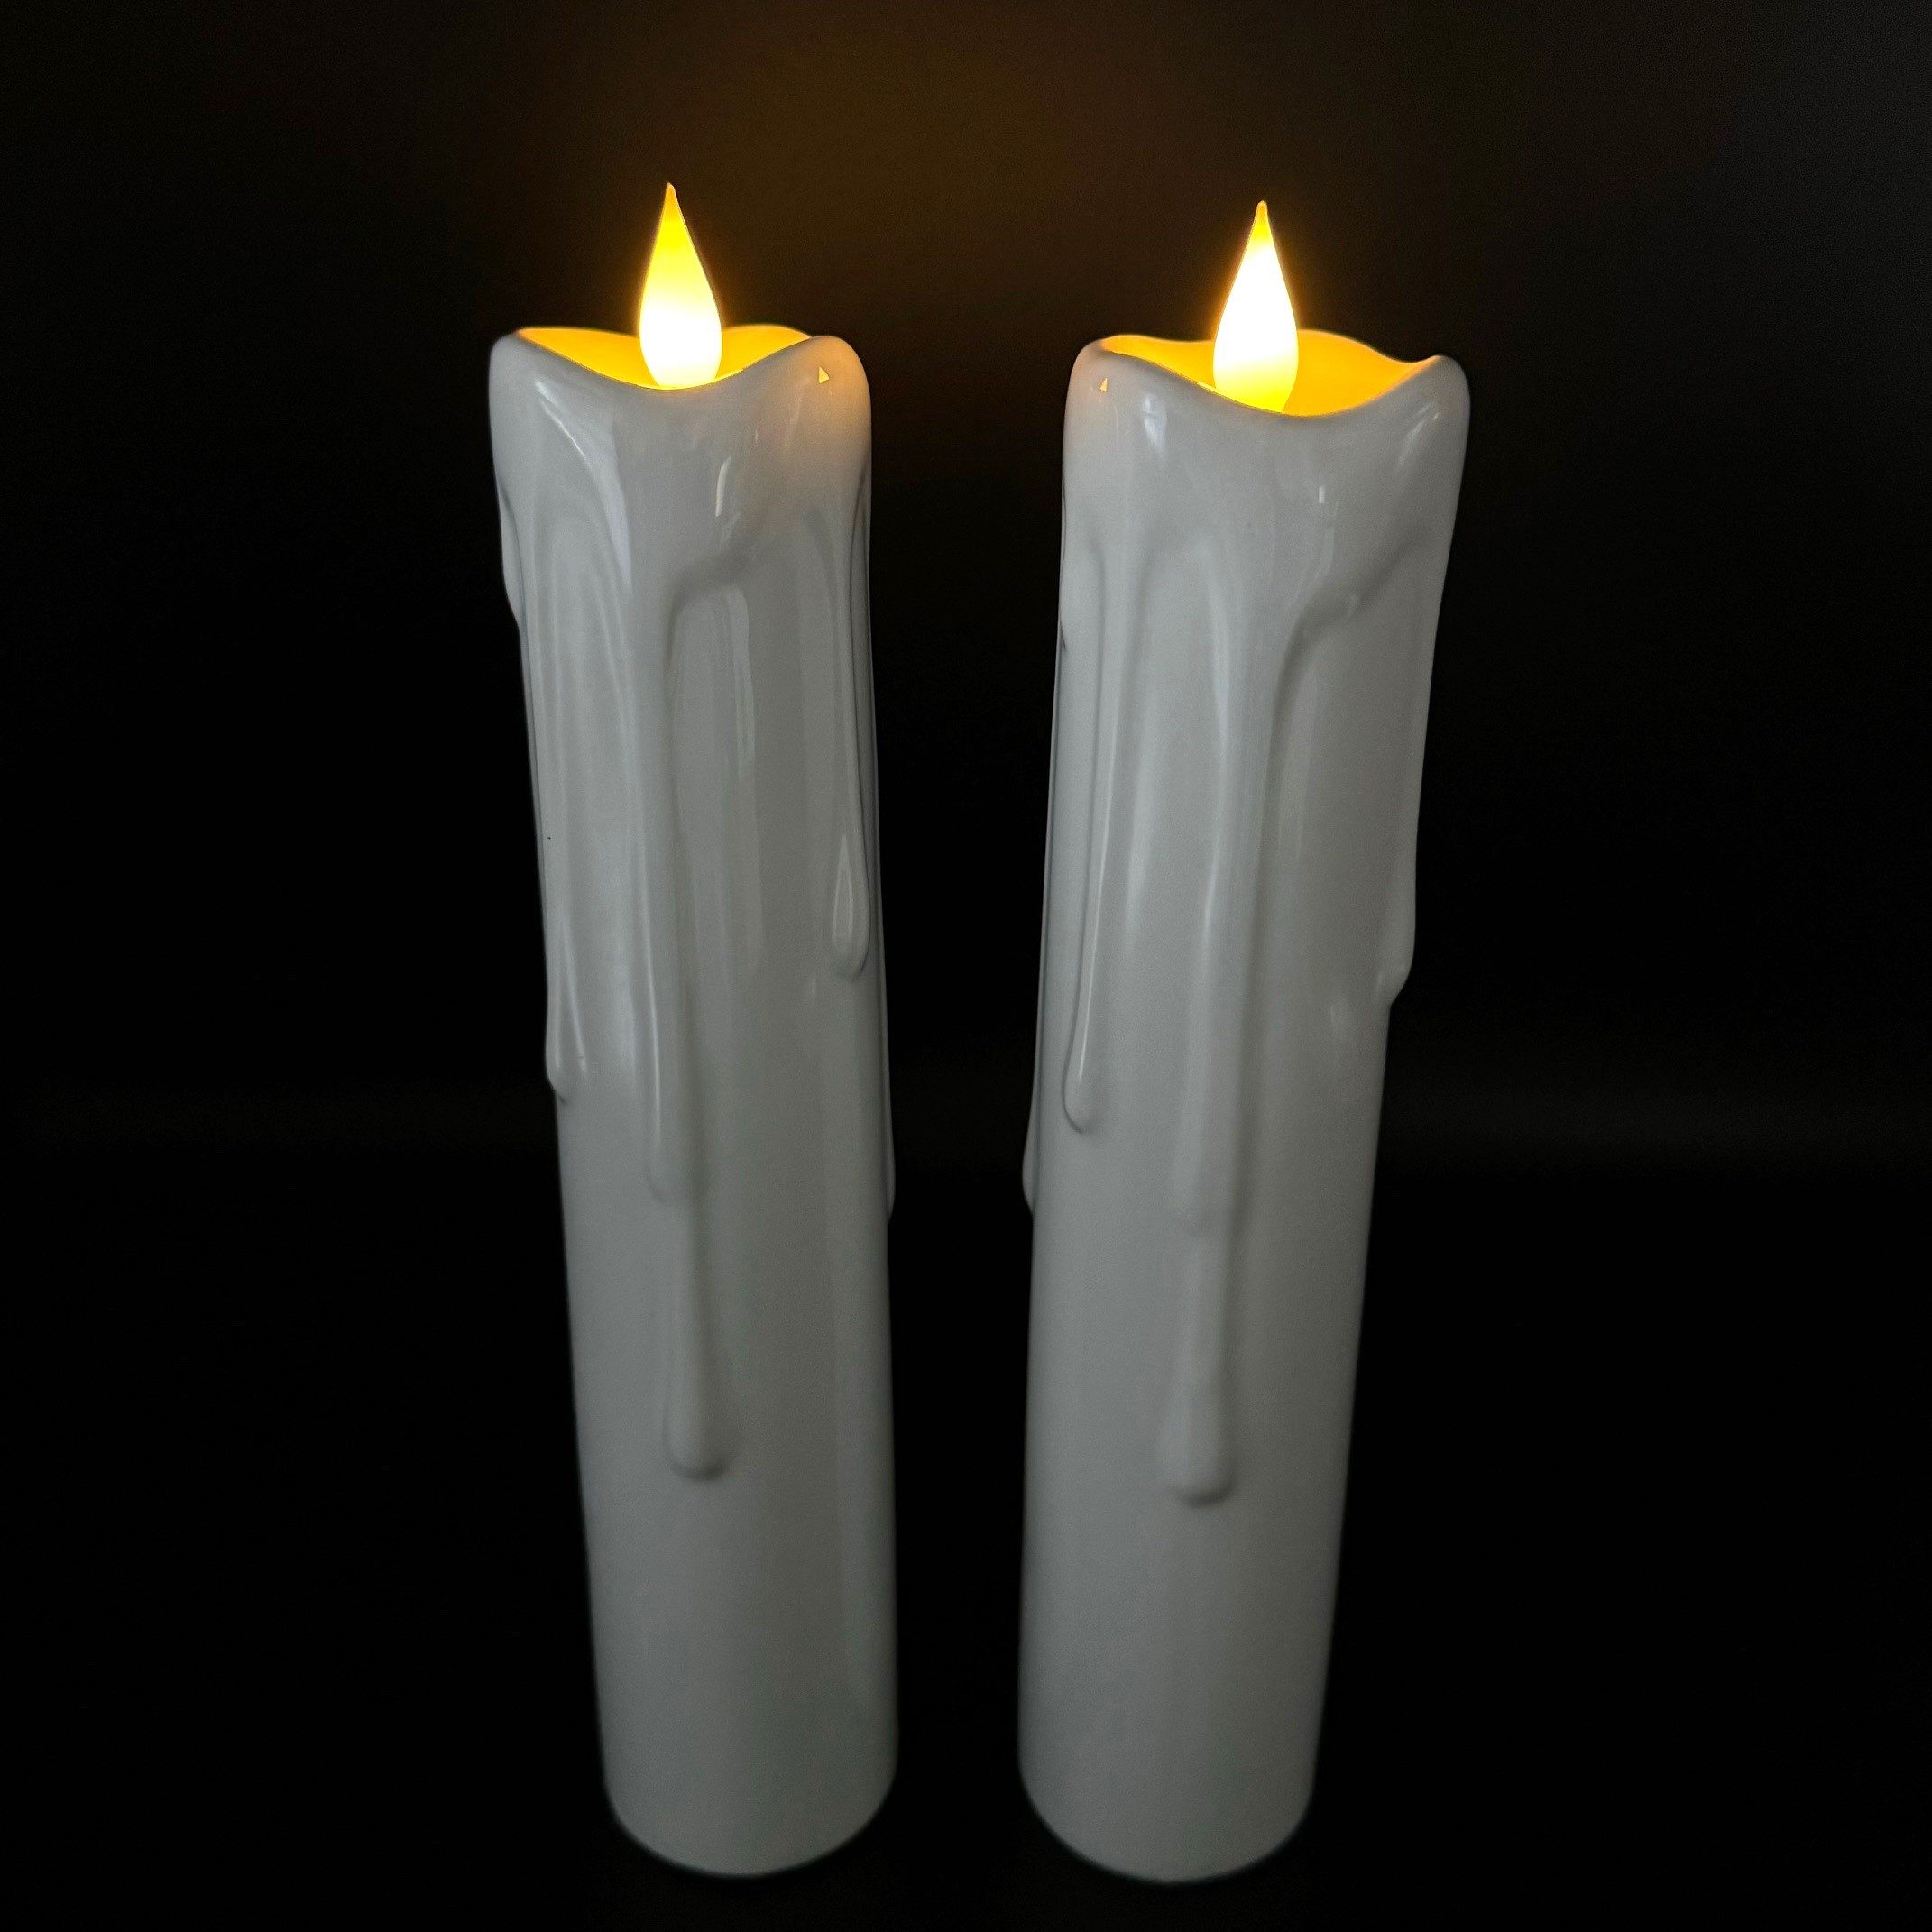 Online-Fuchs LED-Kerze 2er Set große LED-Kerzen aus Keramik mit 6-Stunden Timer (Weiß), Wachsverlauf - XL Format, 27 cm hoch